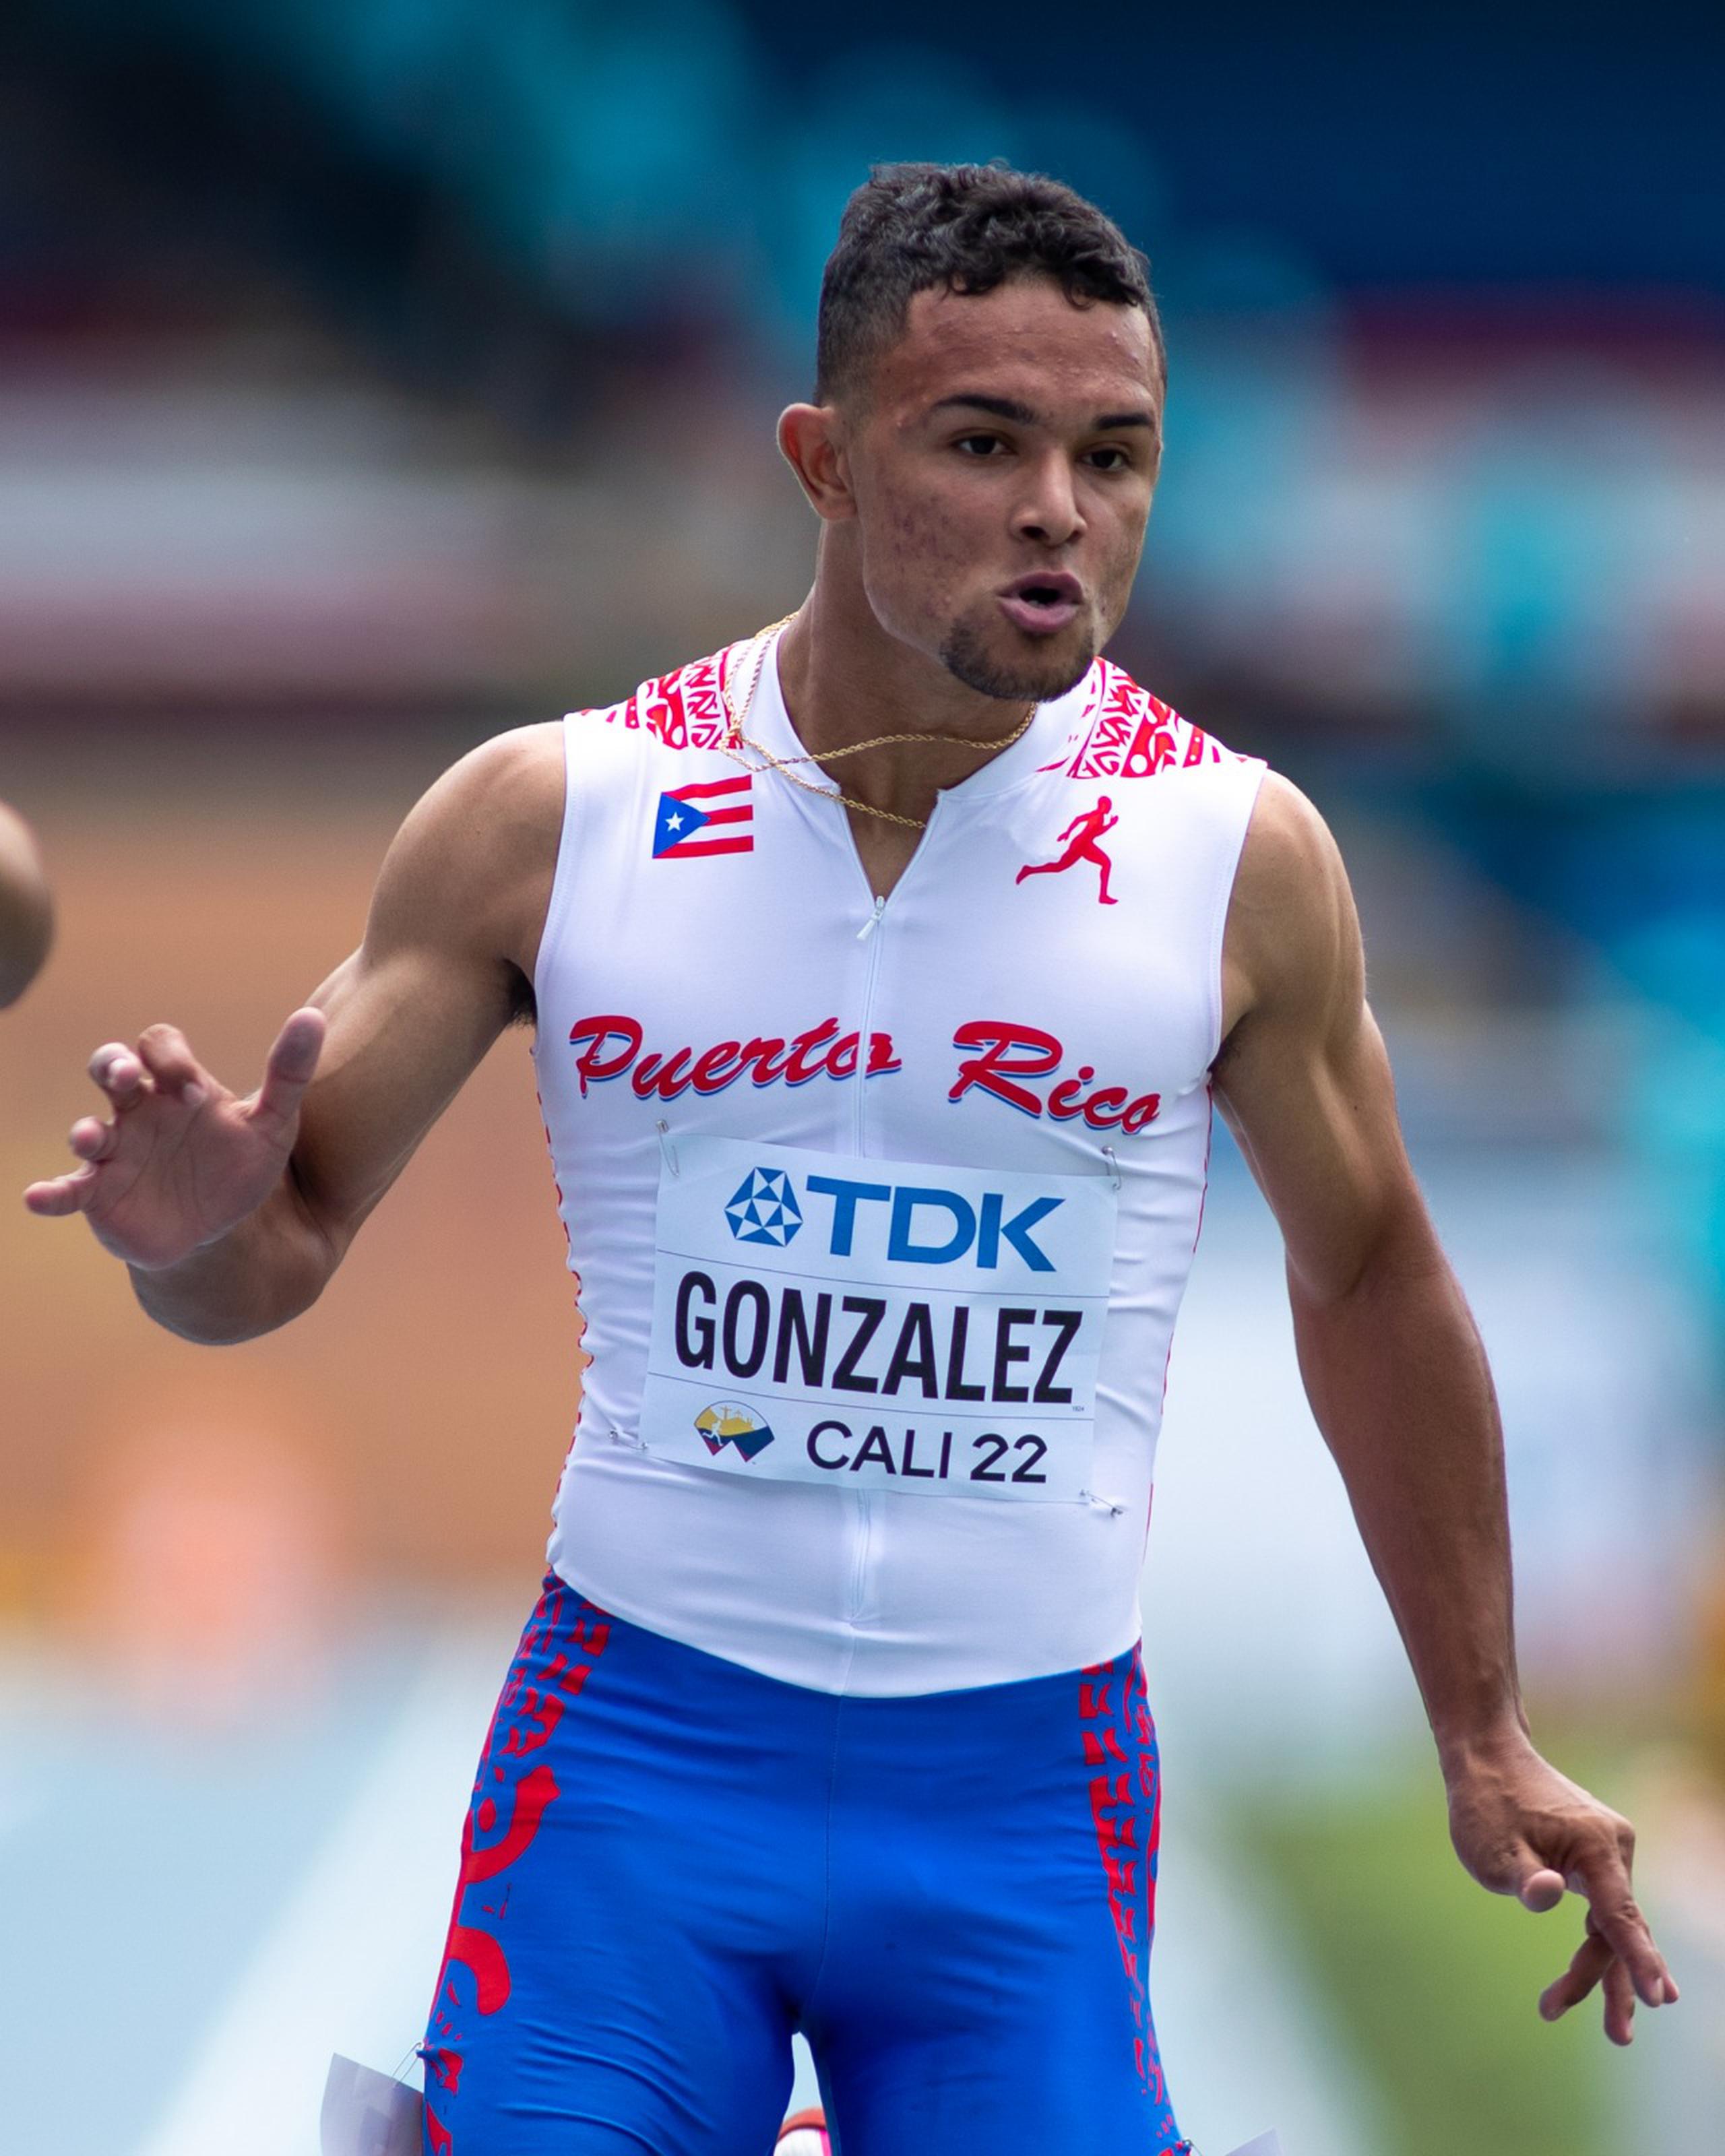 Diego González llega a la meta en los 100 metros libres del Campeonato Mundial Sub 20 con una marca personal y el pase a las semifinales de la prueba.